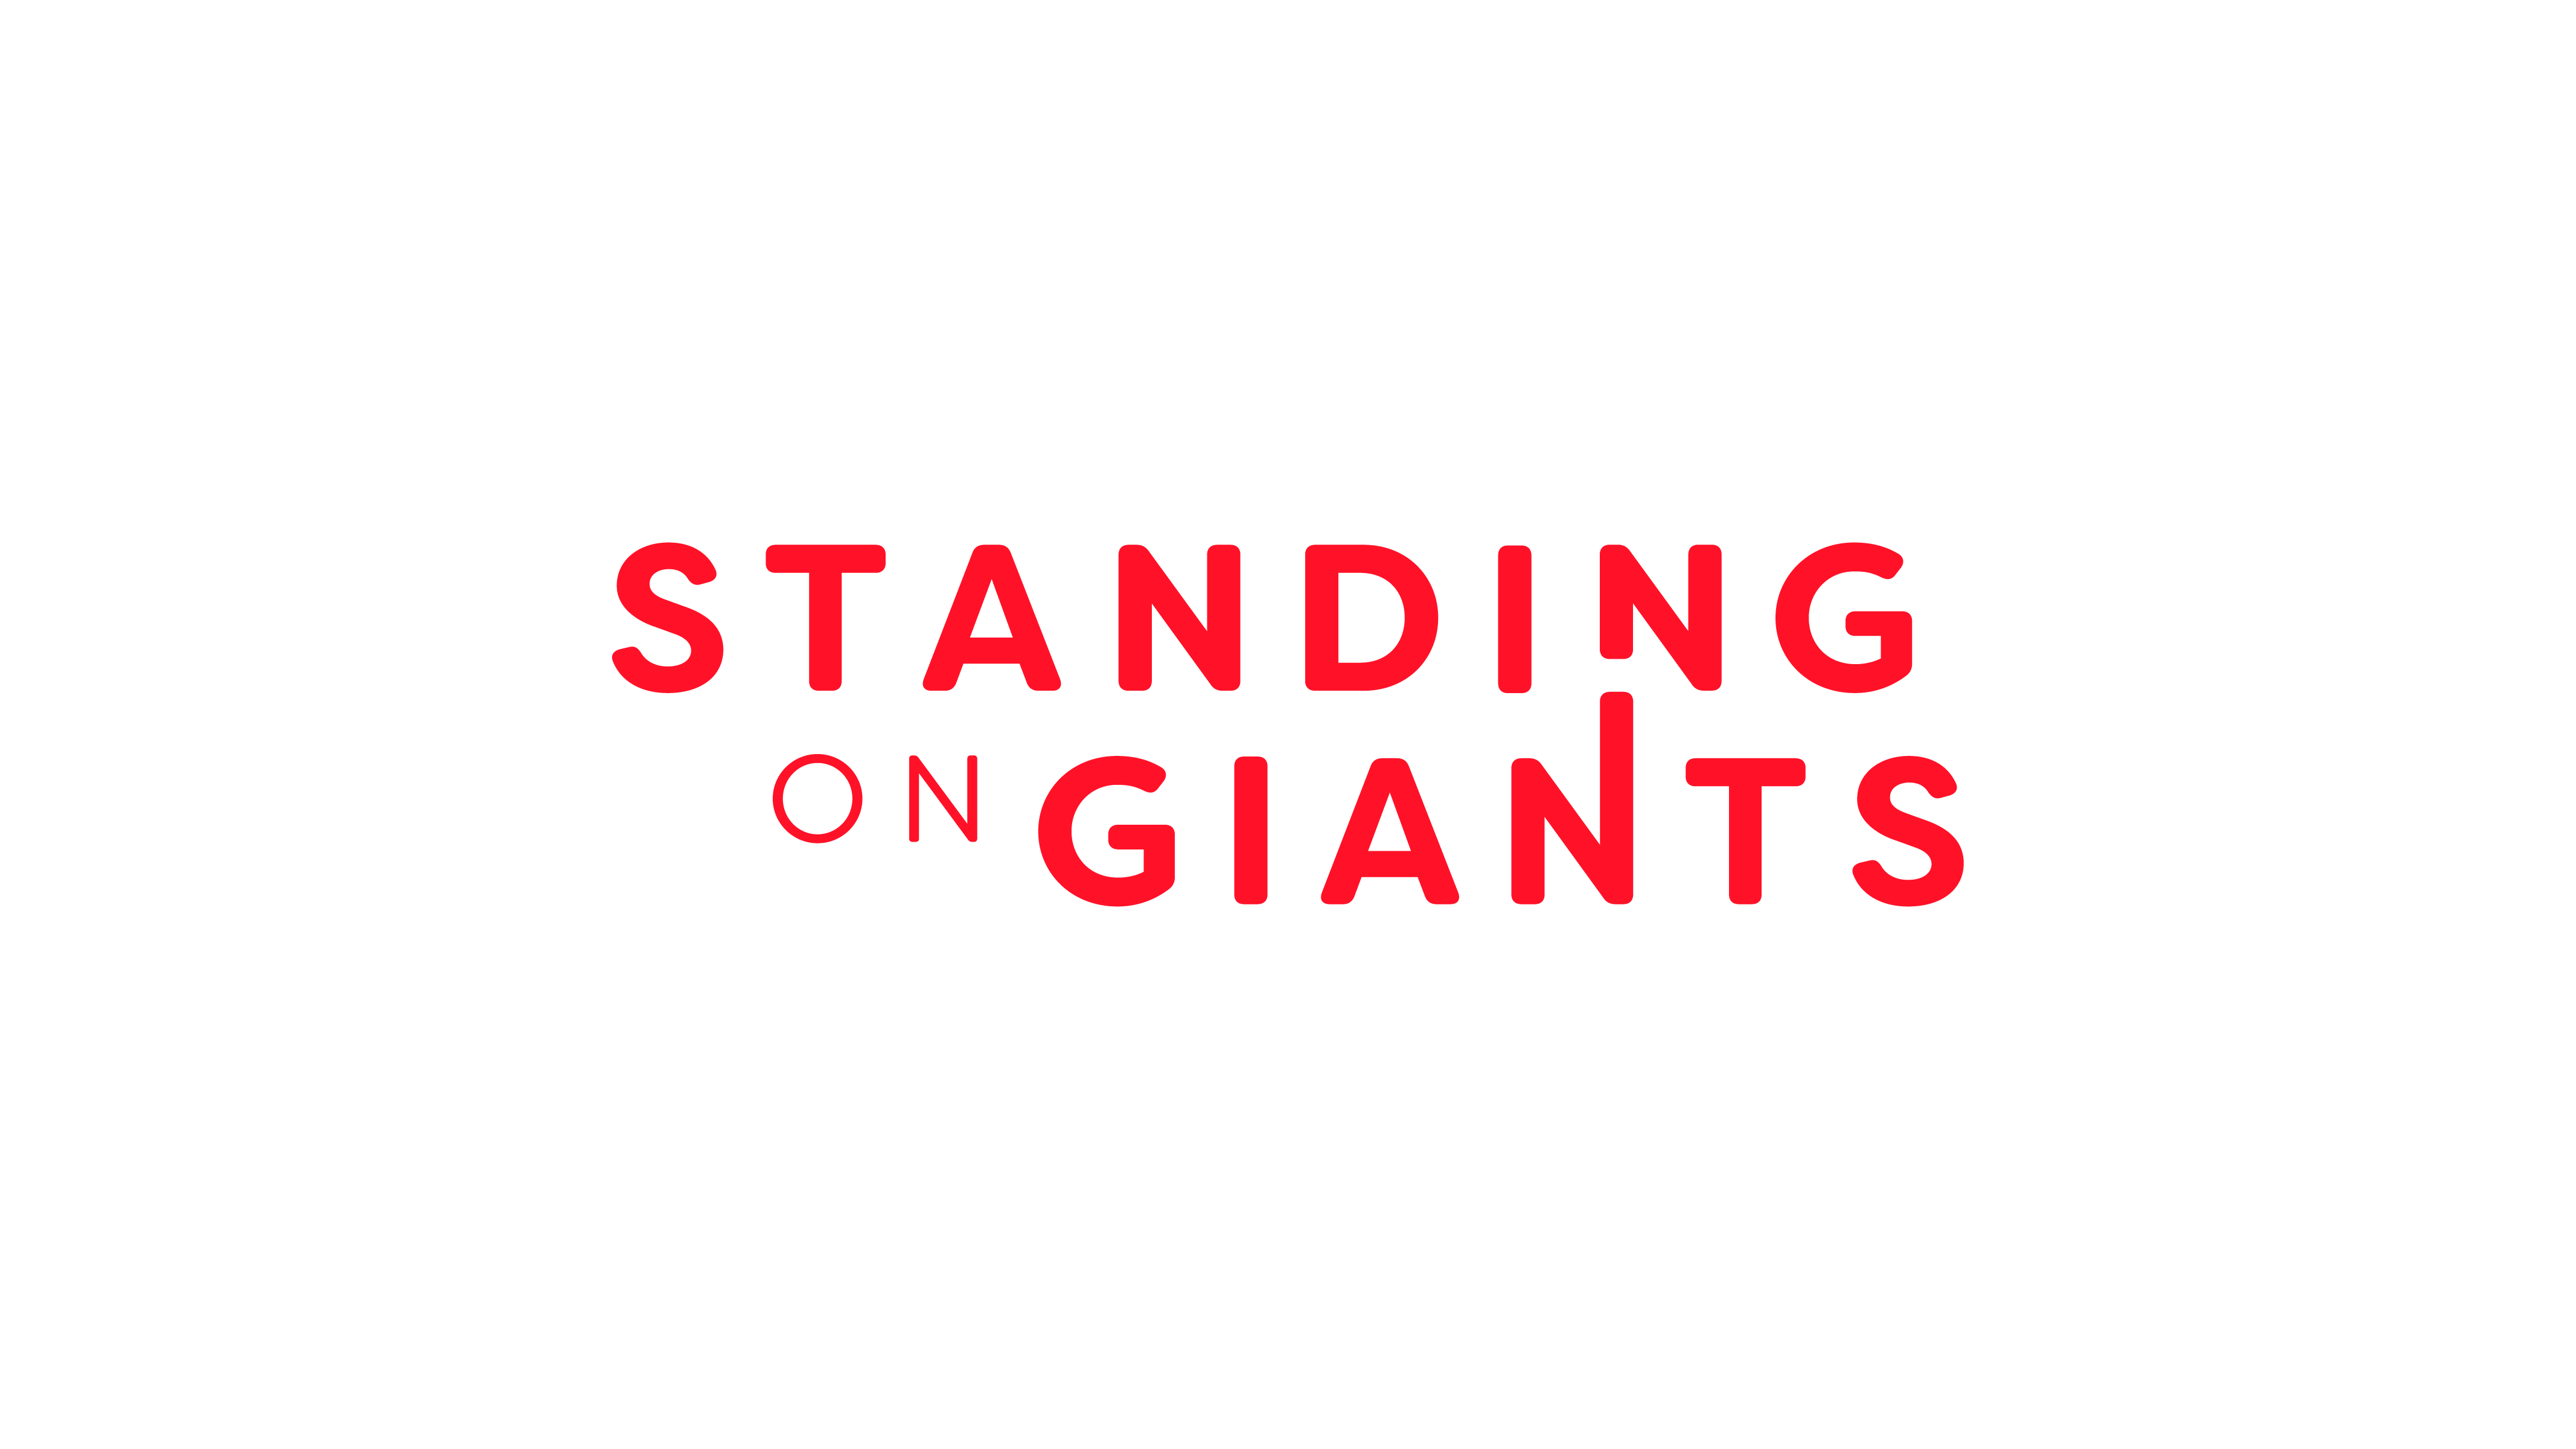 Standing on Giants